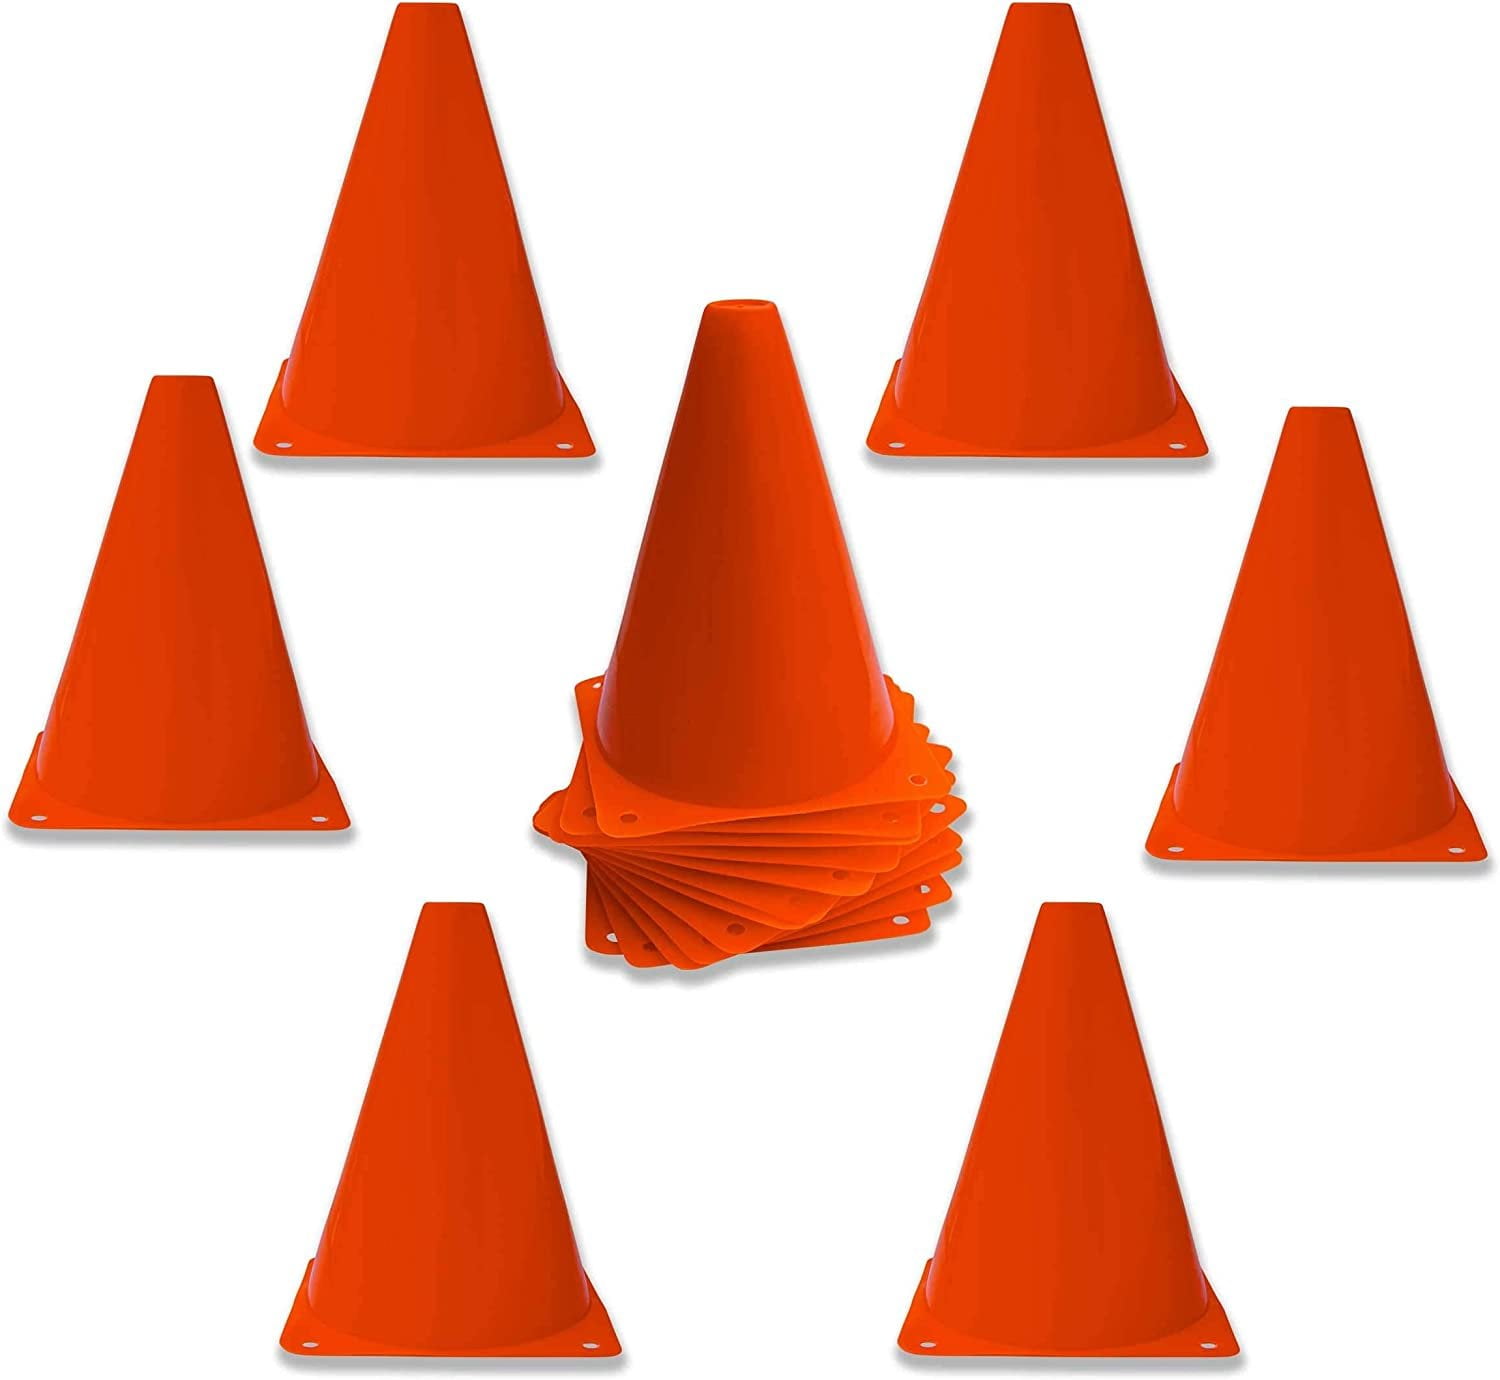 7 Plastic Traffic Cones, Multipurpose Construction Theme Party